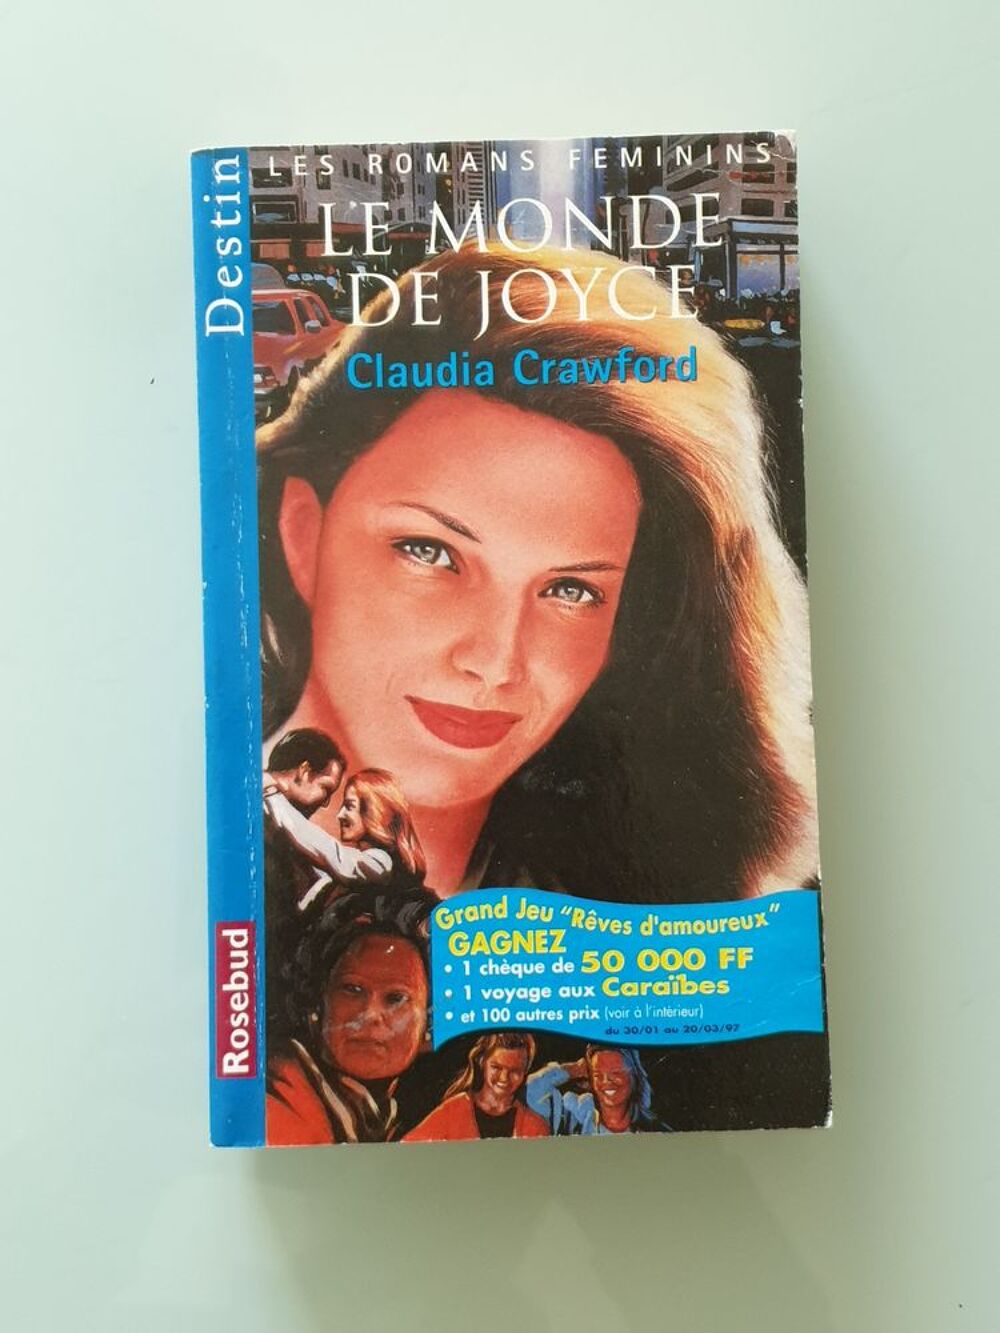 Le Monde De Joyce Claudia Crawford
Marseille 9 eme
Livres et BD